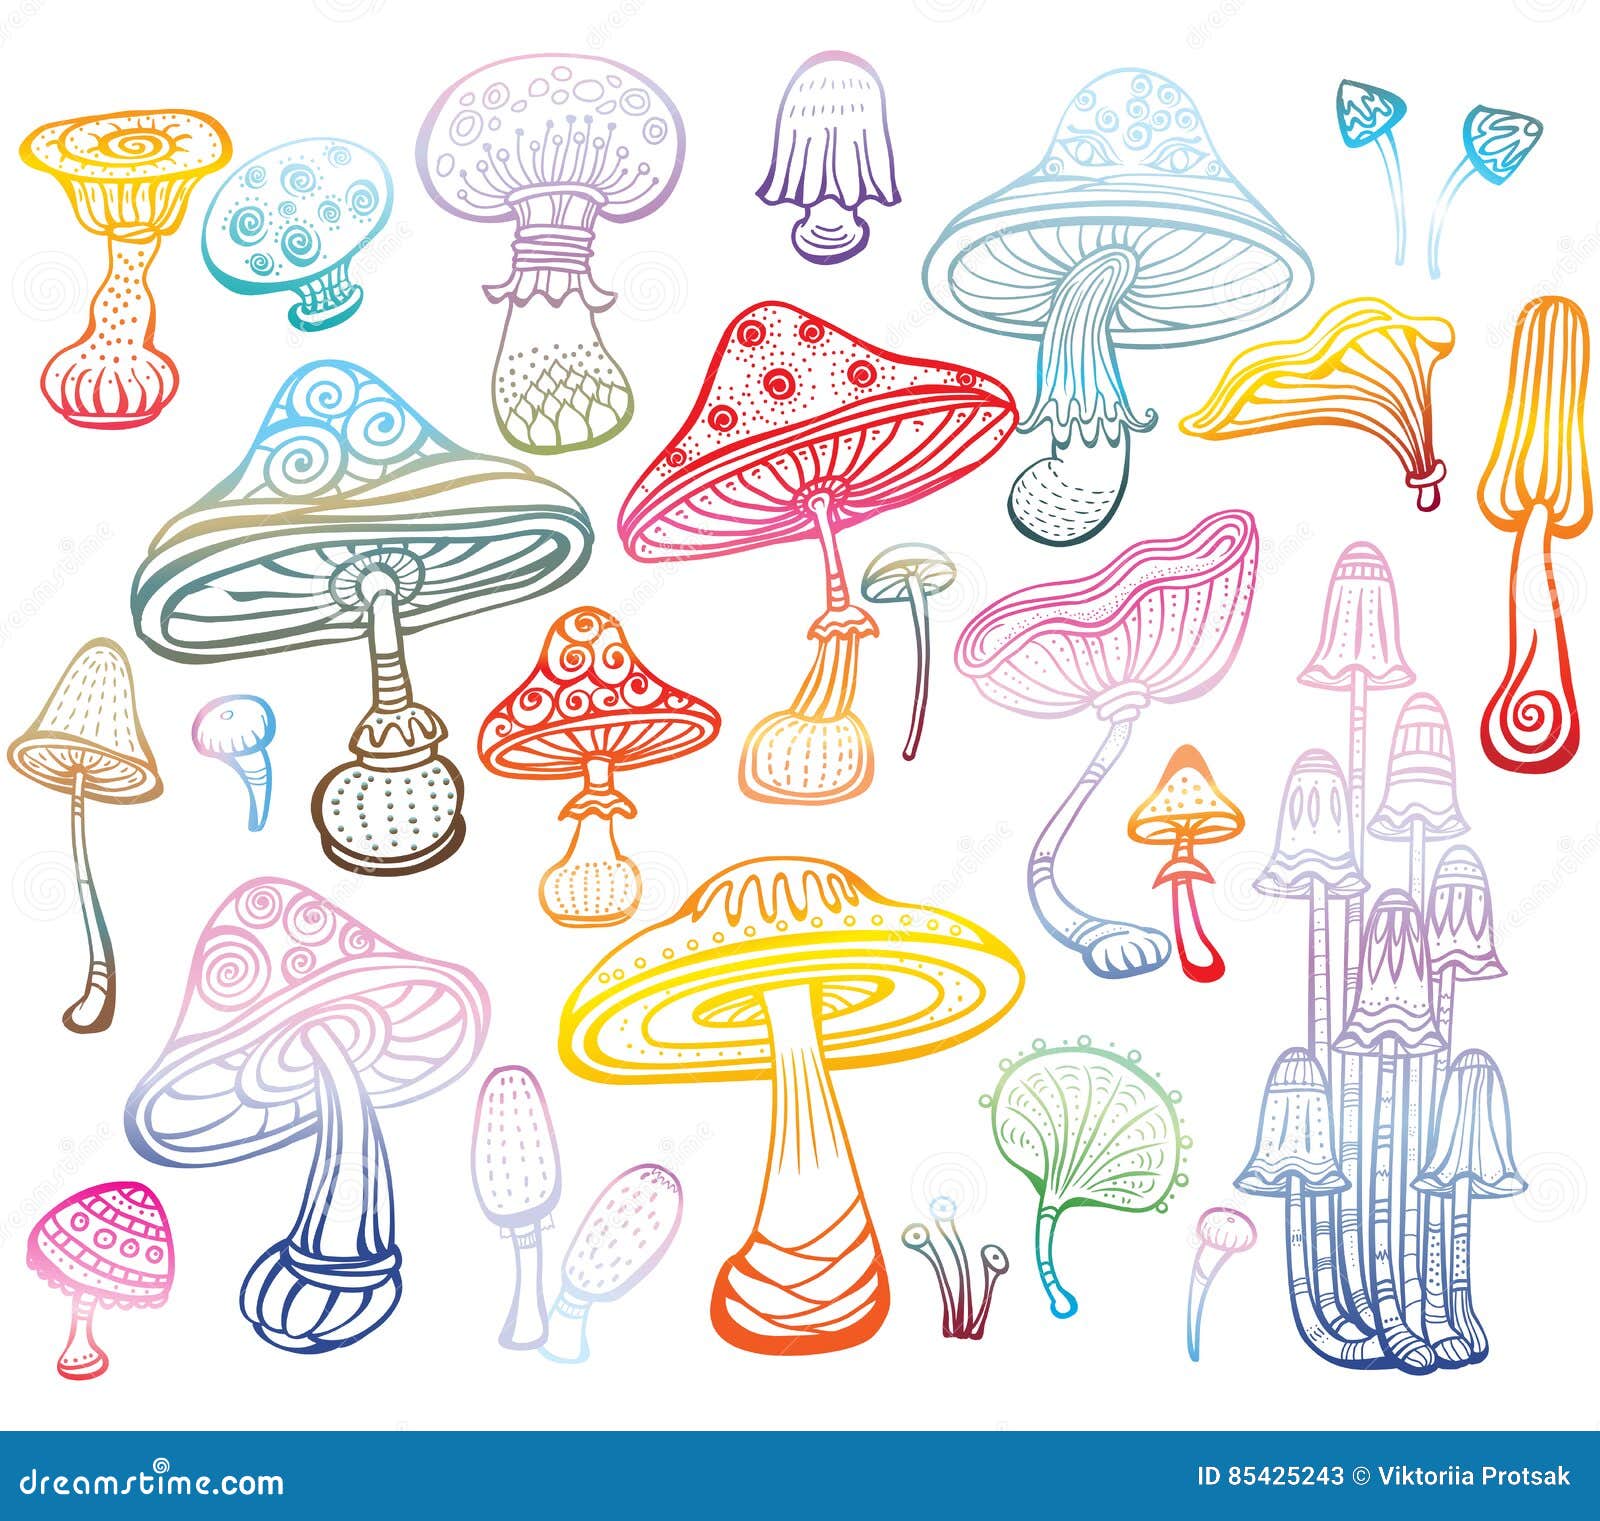 set of sketch of mushrooms